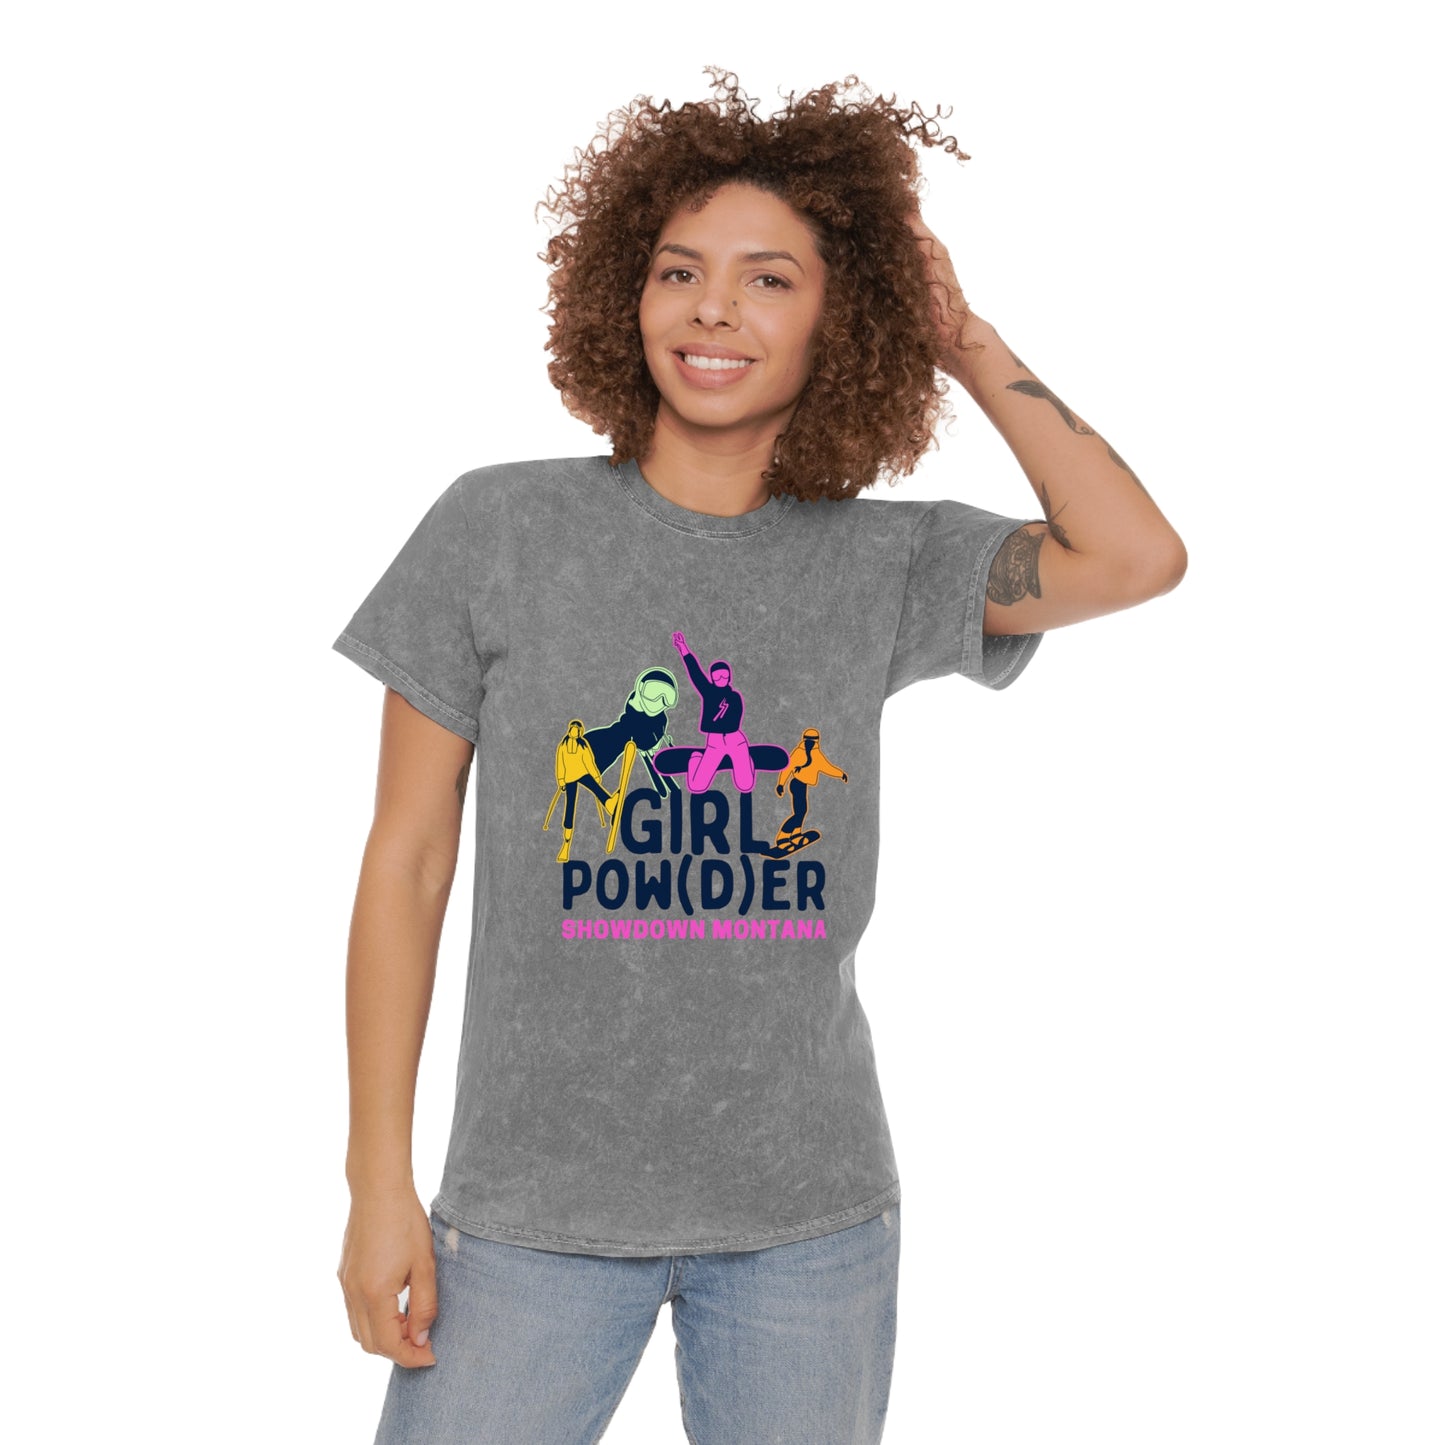 GIRL POW(D)ER Mineral Wash T-Shirt